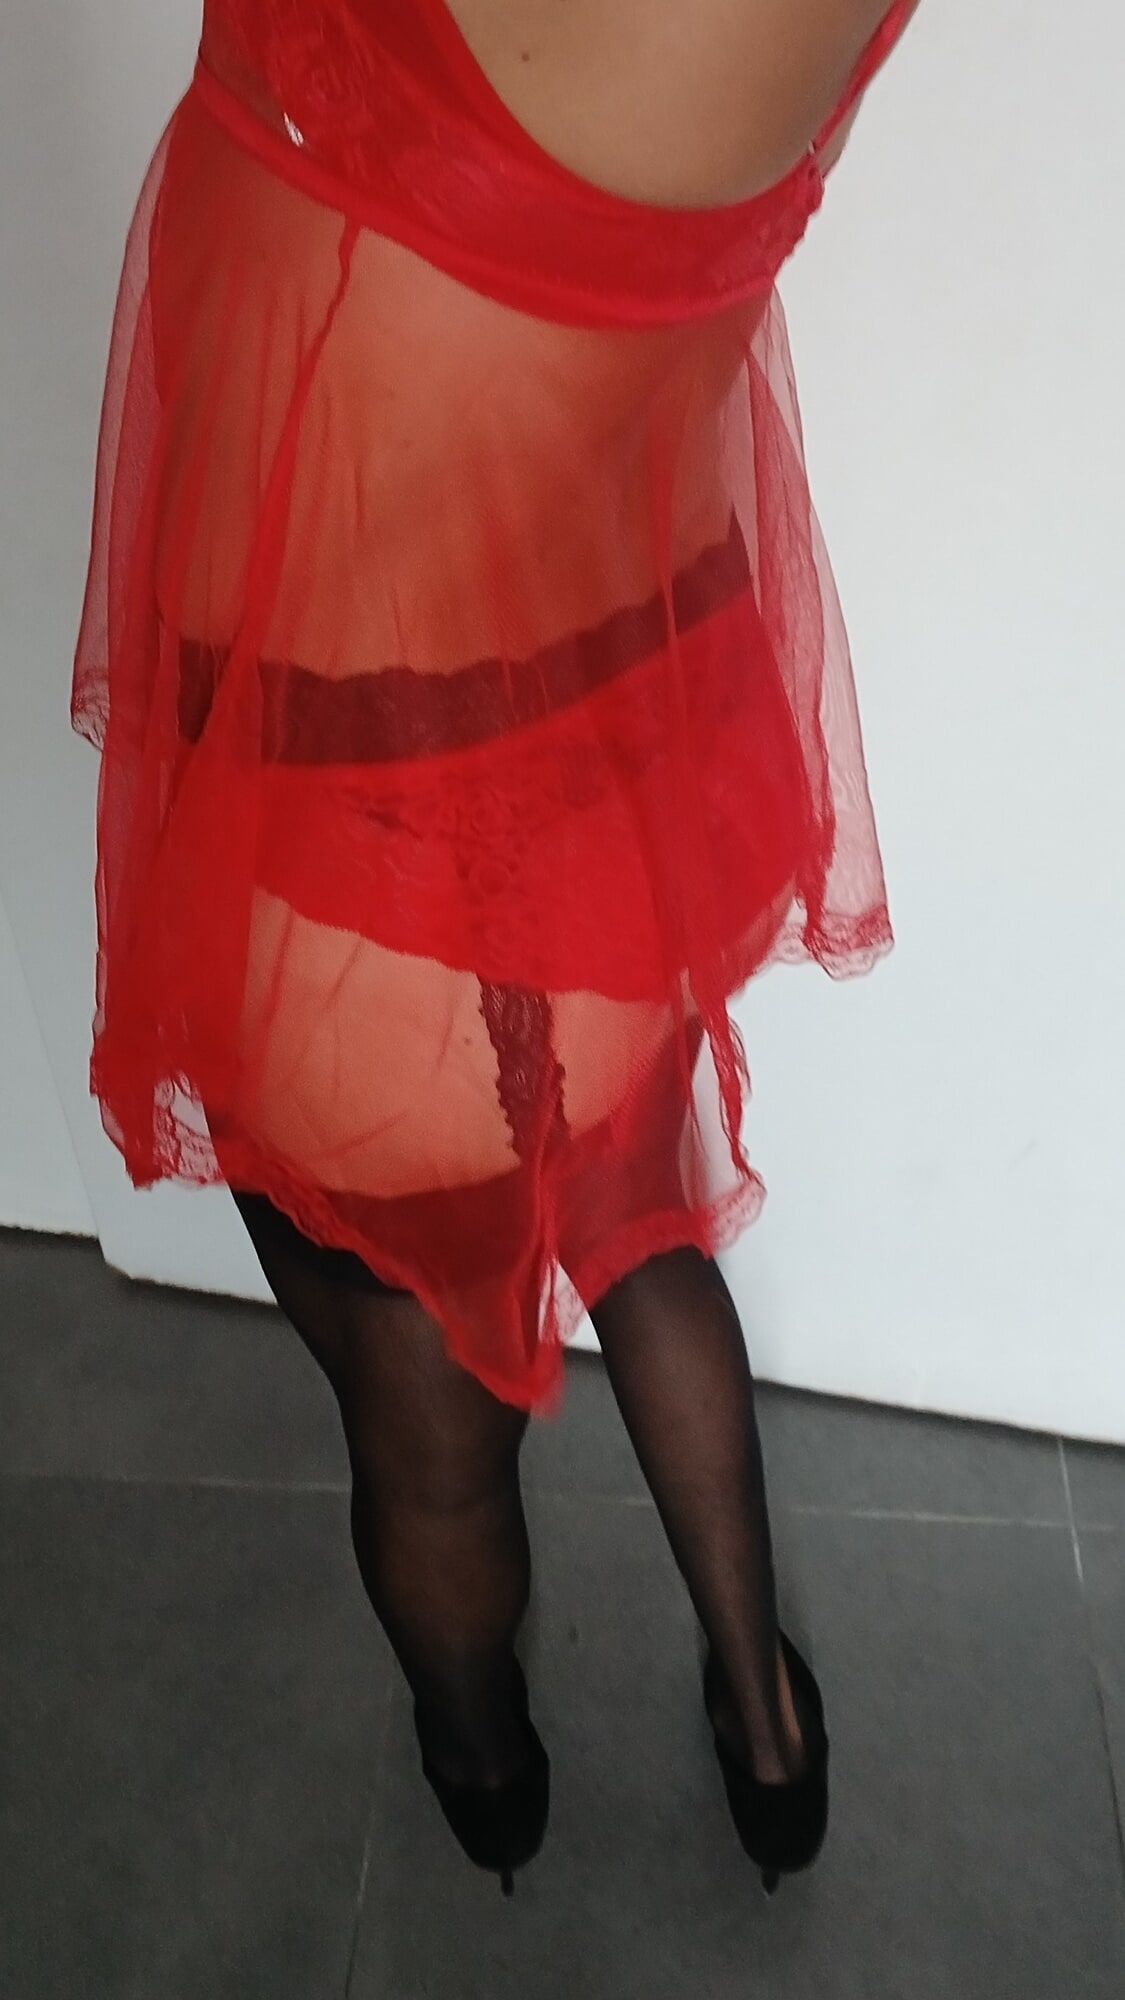 Red nightie black stoking high heels  #10